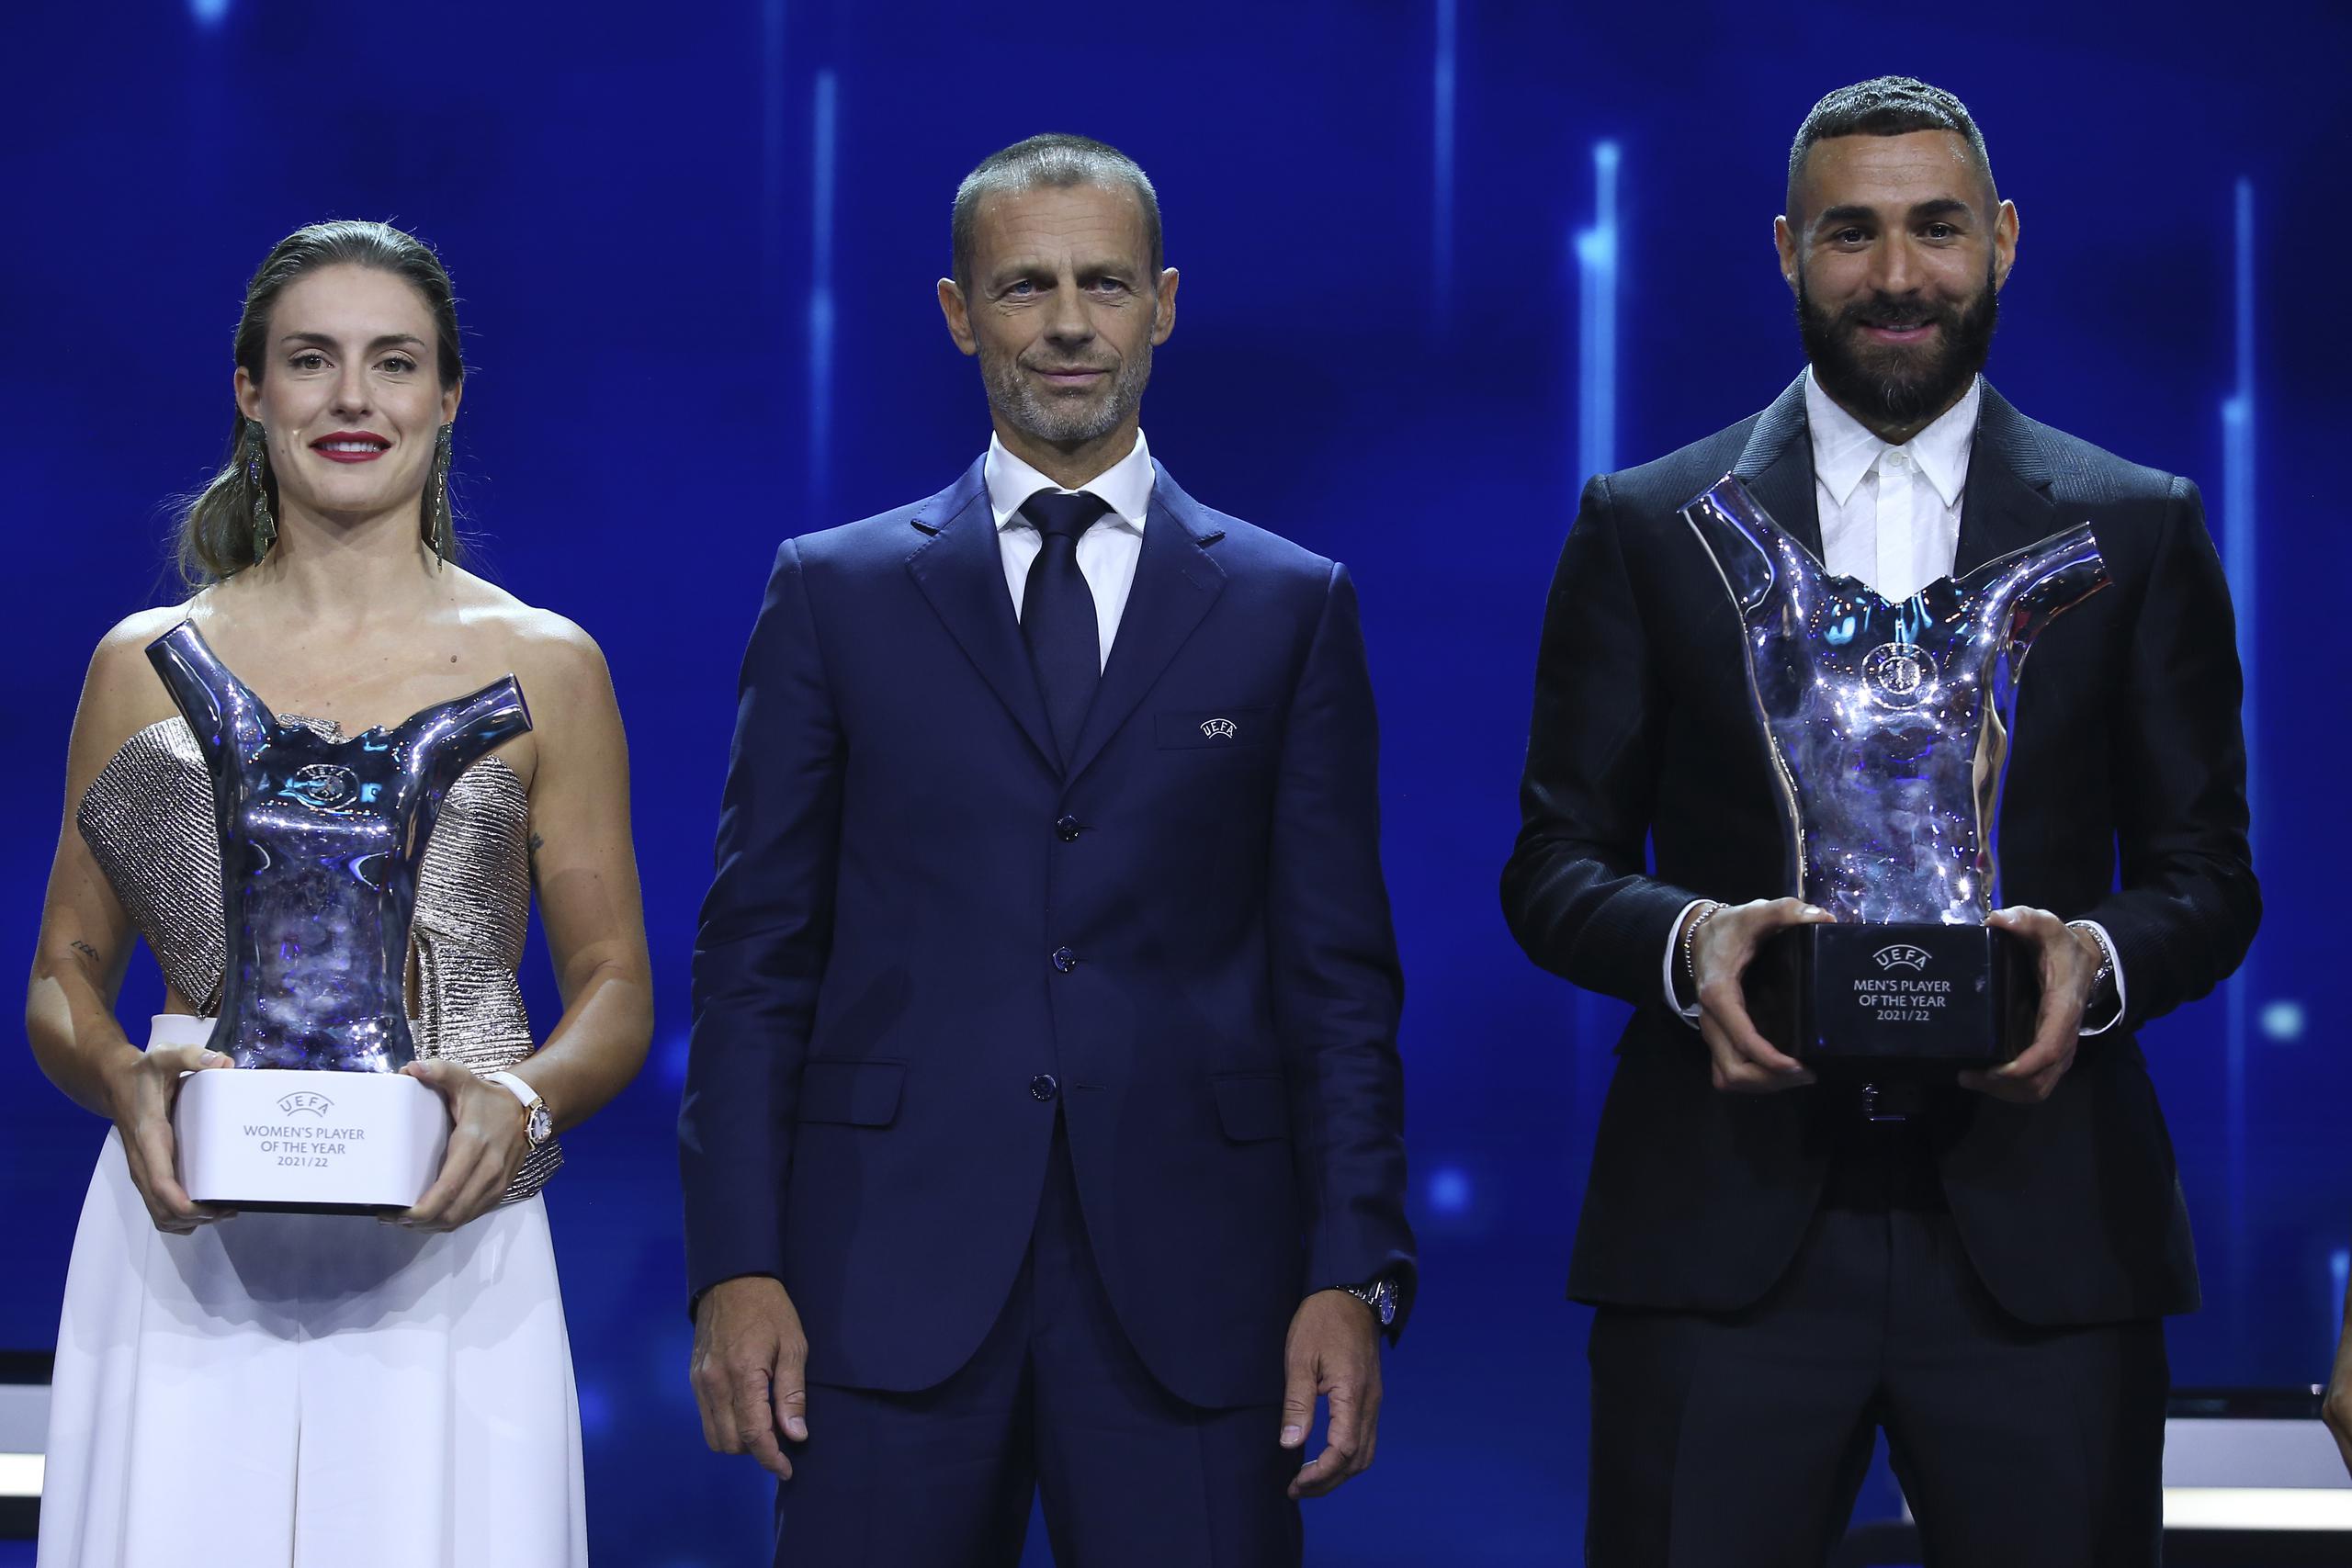 Alexia Putellas del Barcelona femenino y Karim Benzema del Real Madrid posan con los trofeos a Jugador del Año de la UEFA junto al presidente del organismo Aleksander Ceferin durante el sorteo de la fase de grupos de la Liga de Campeones en Estambul el jueves 25 de agosto del 2022.